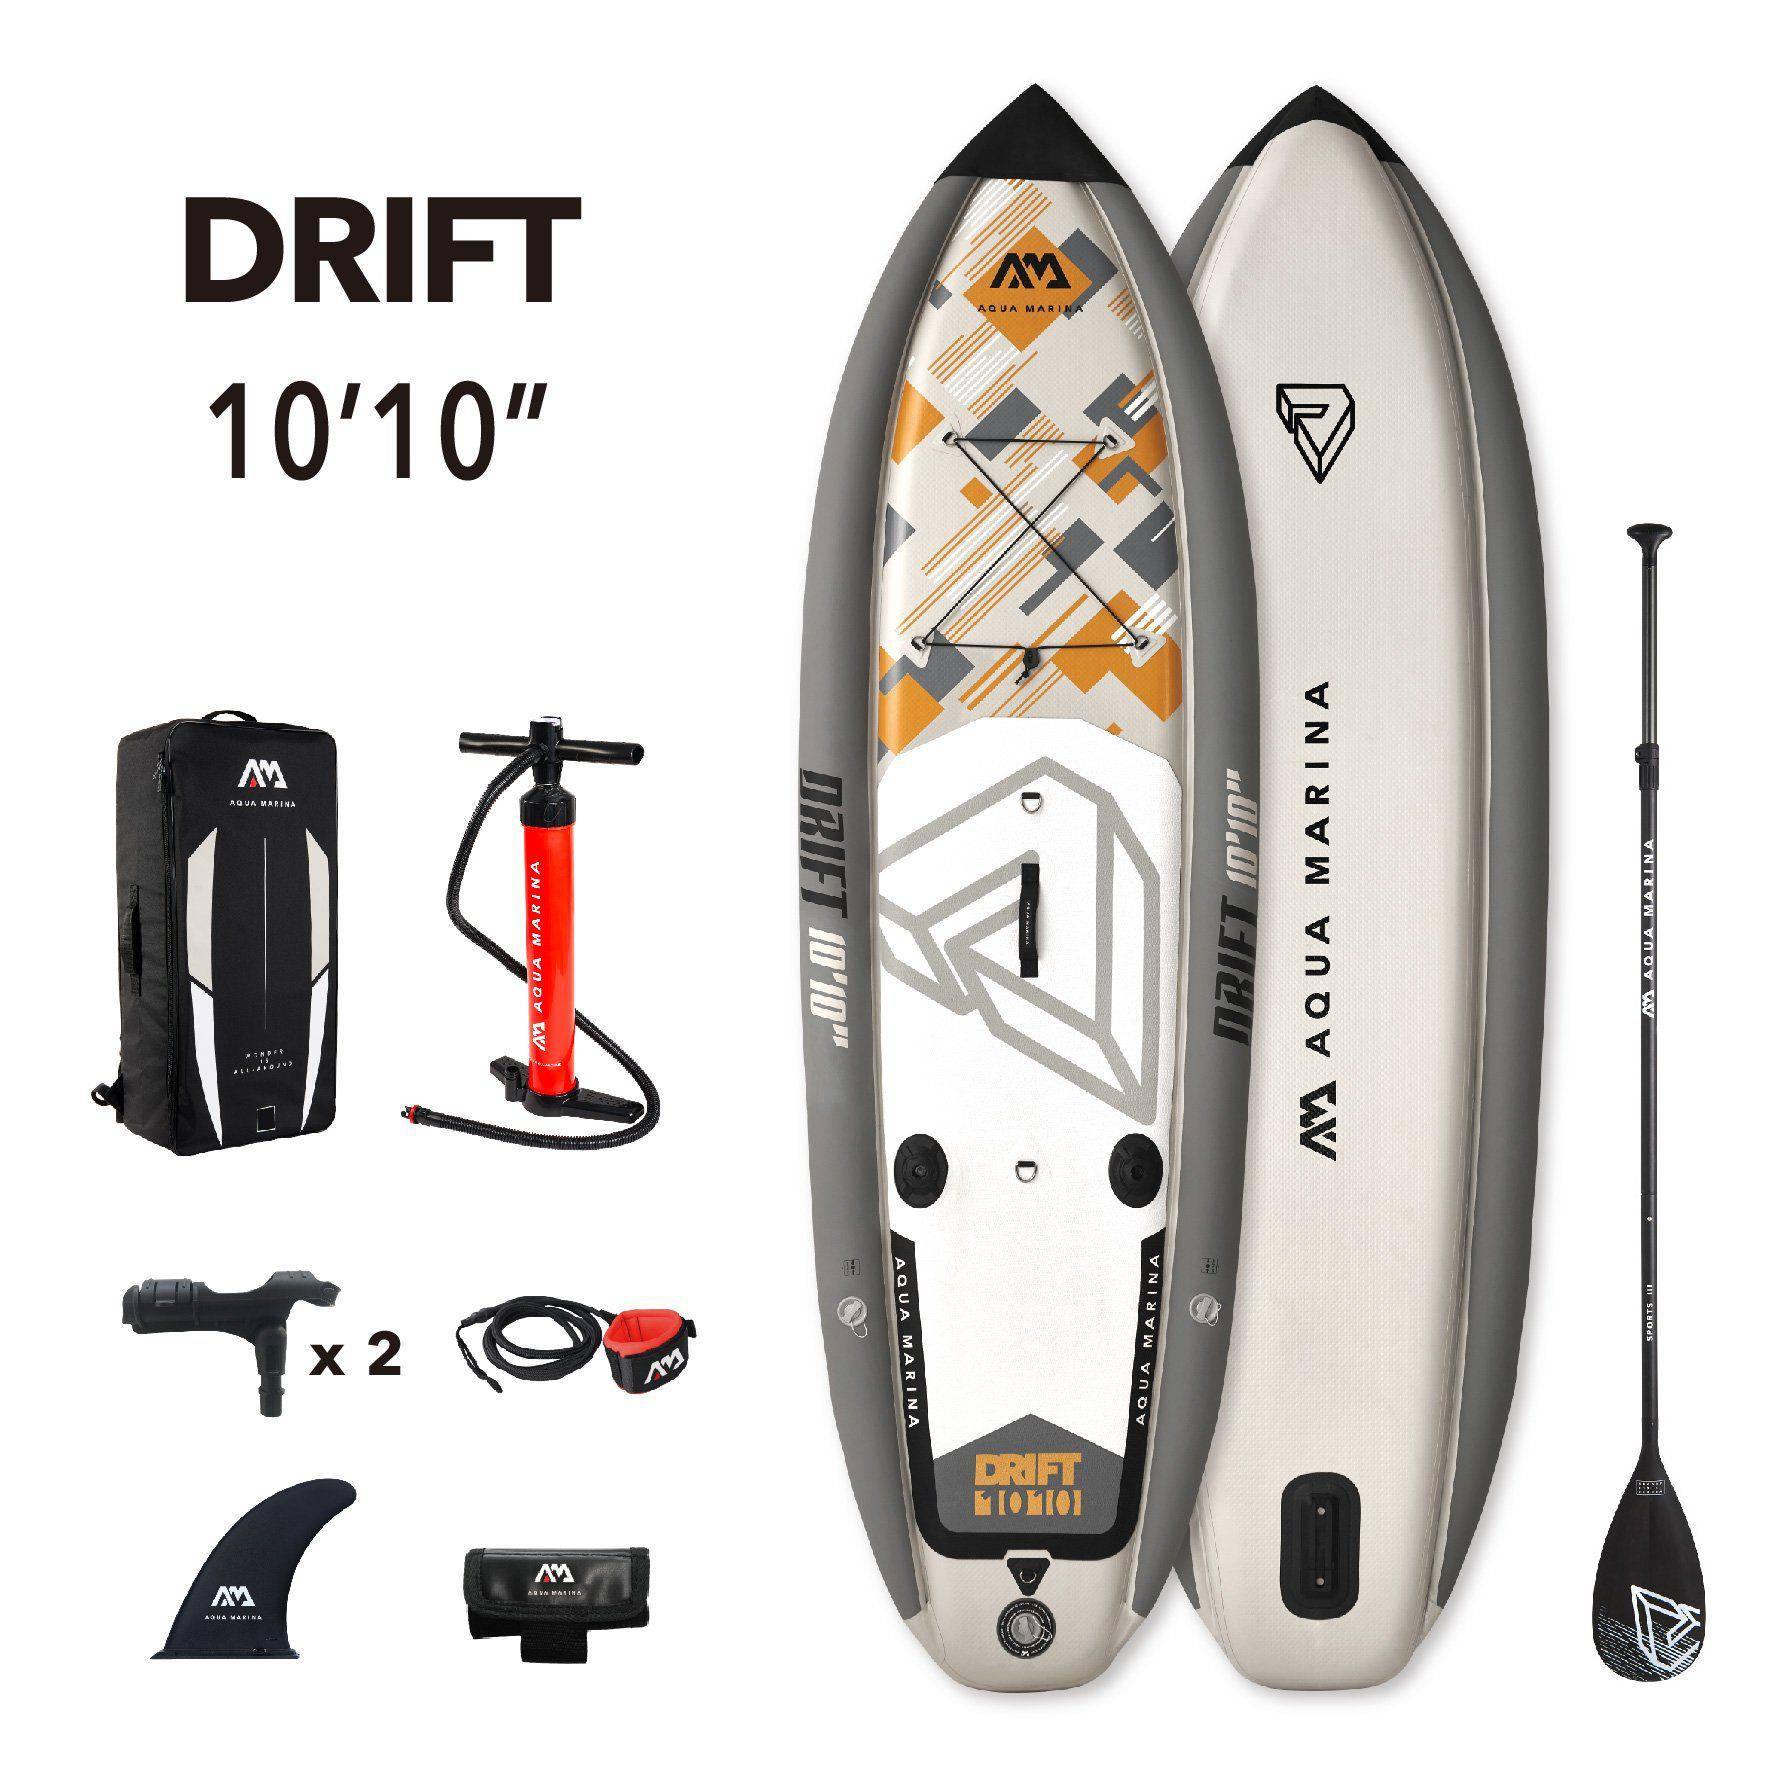 Drift Fishing iSUP Paddle Board - Dti Direct USA